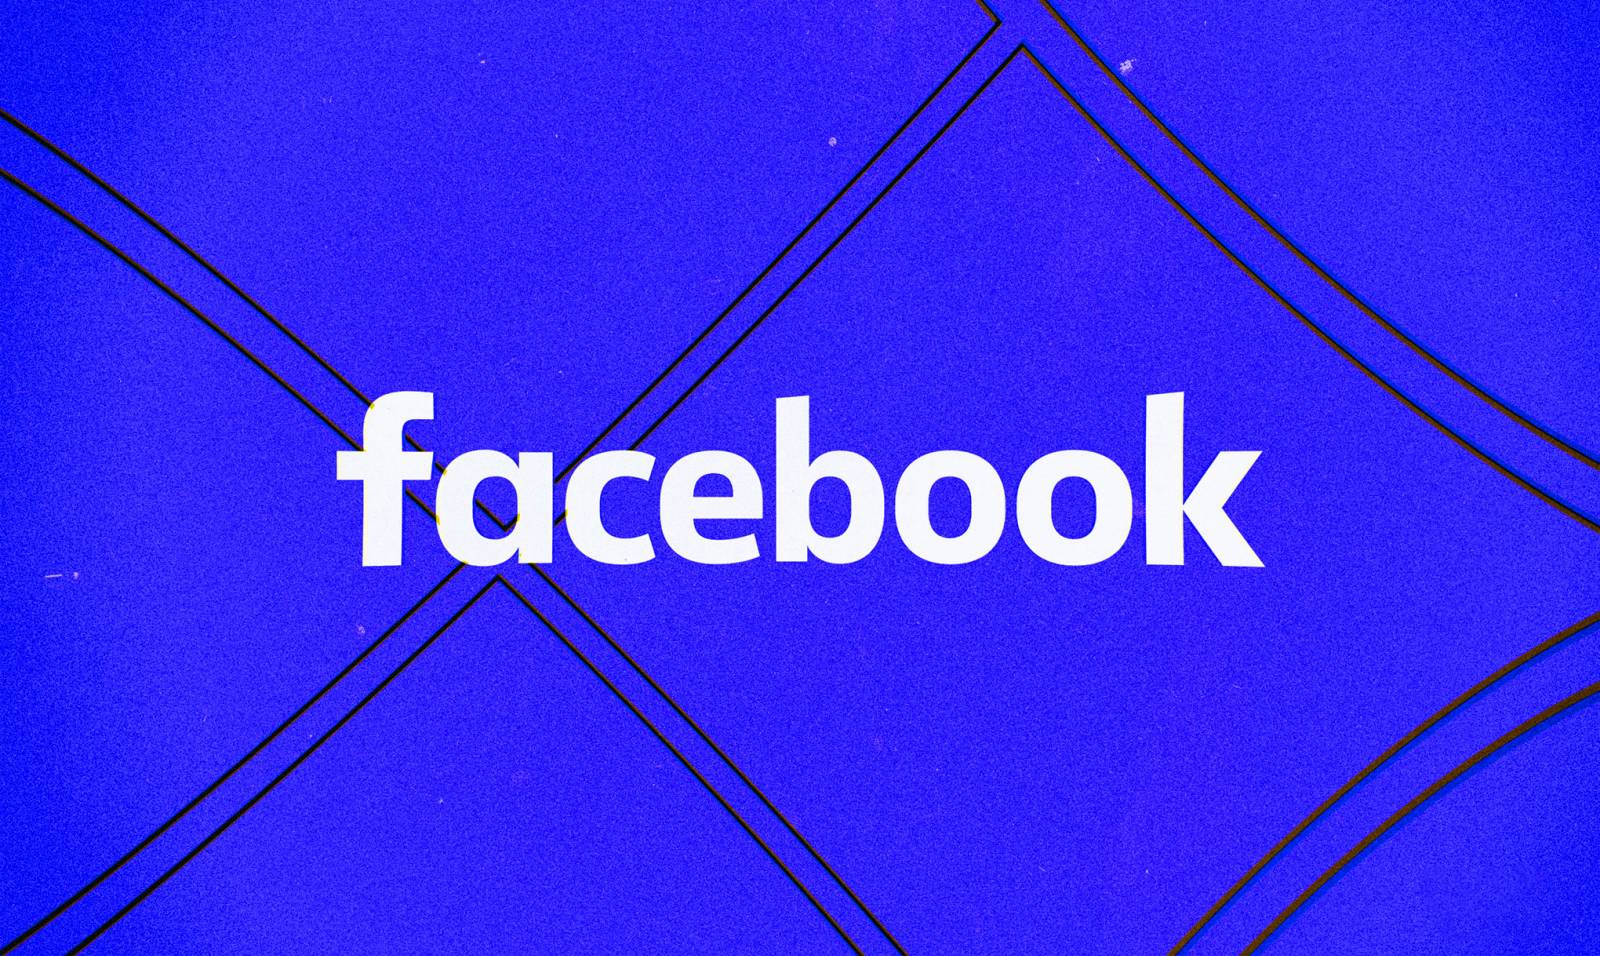 Für die Anwendung wurde ein Facebook-Update veröffentlicht, welche Änderungen angeboten werden